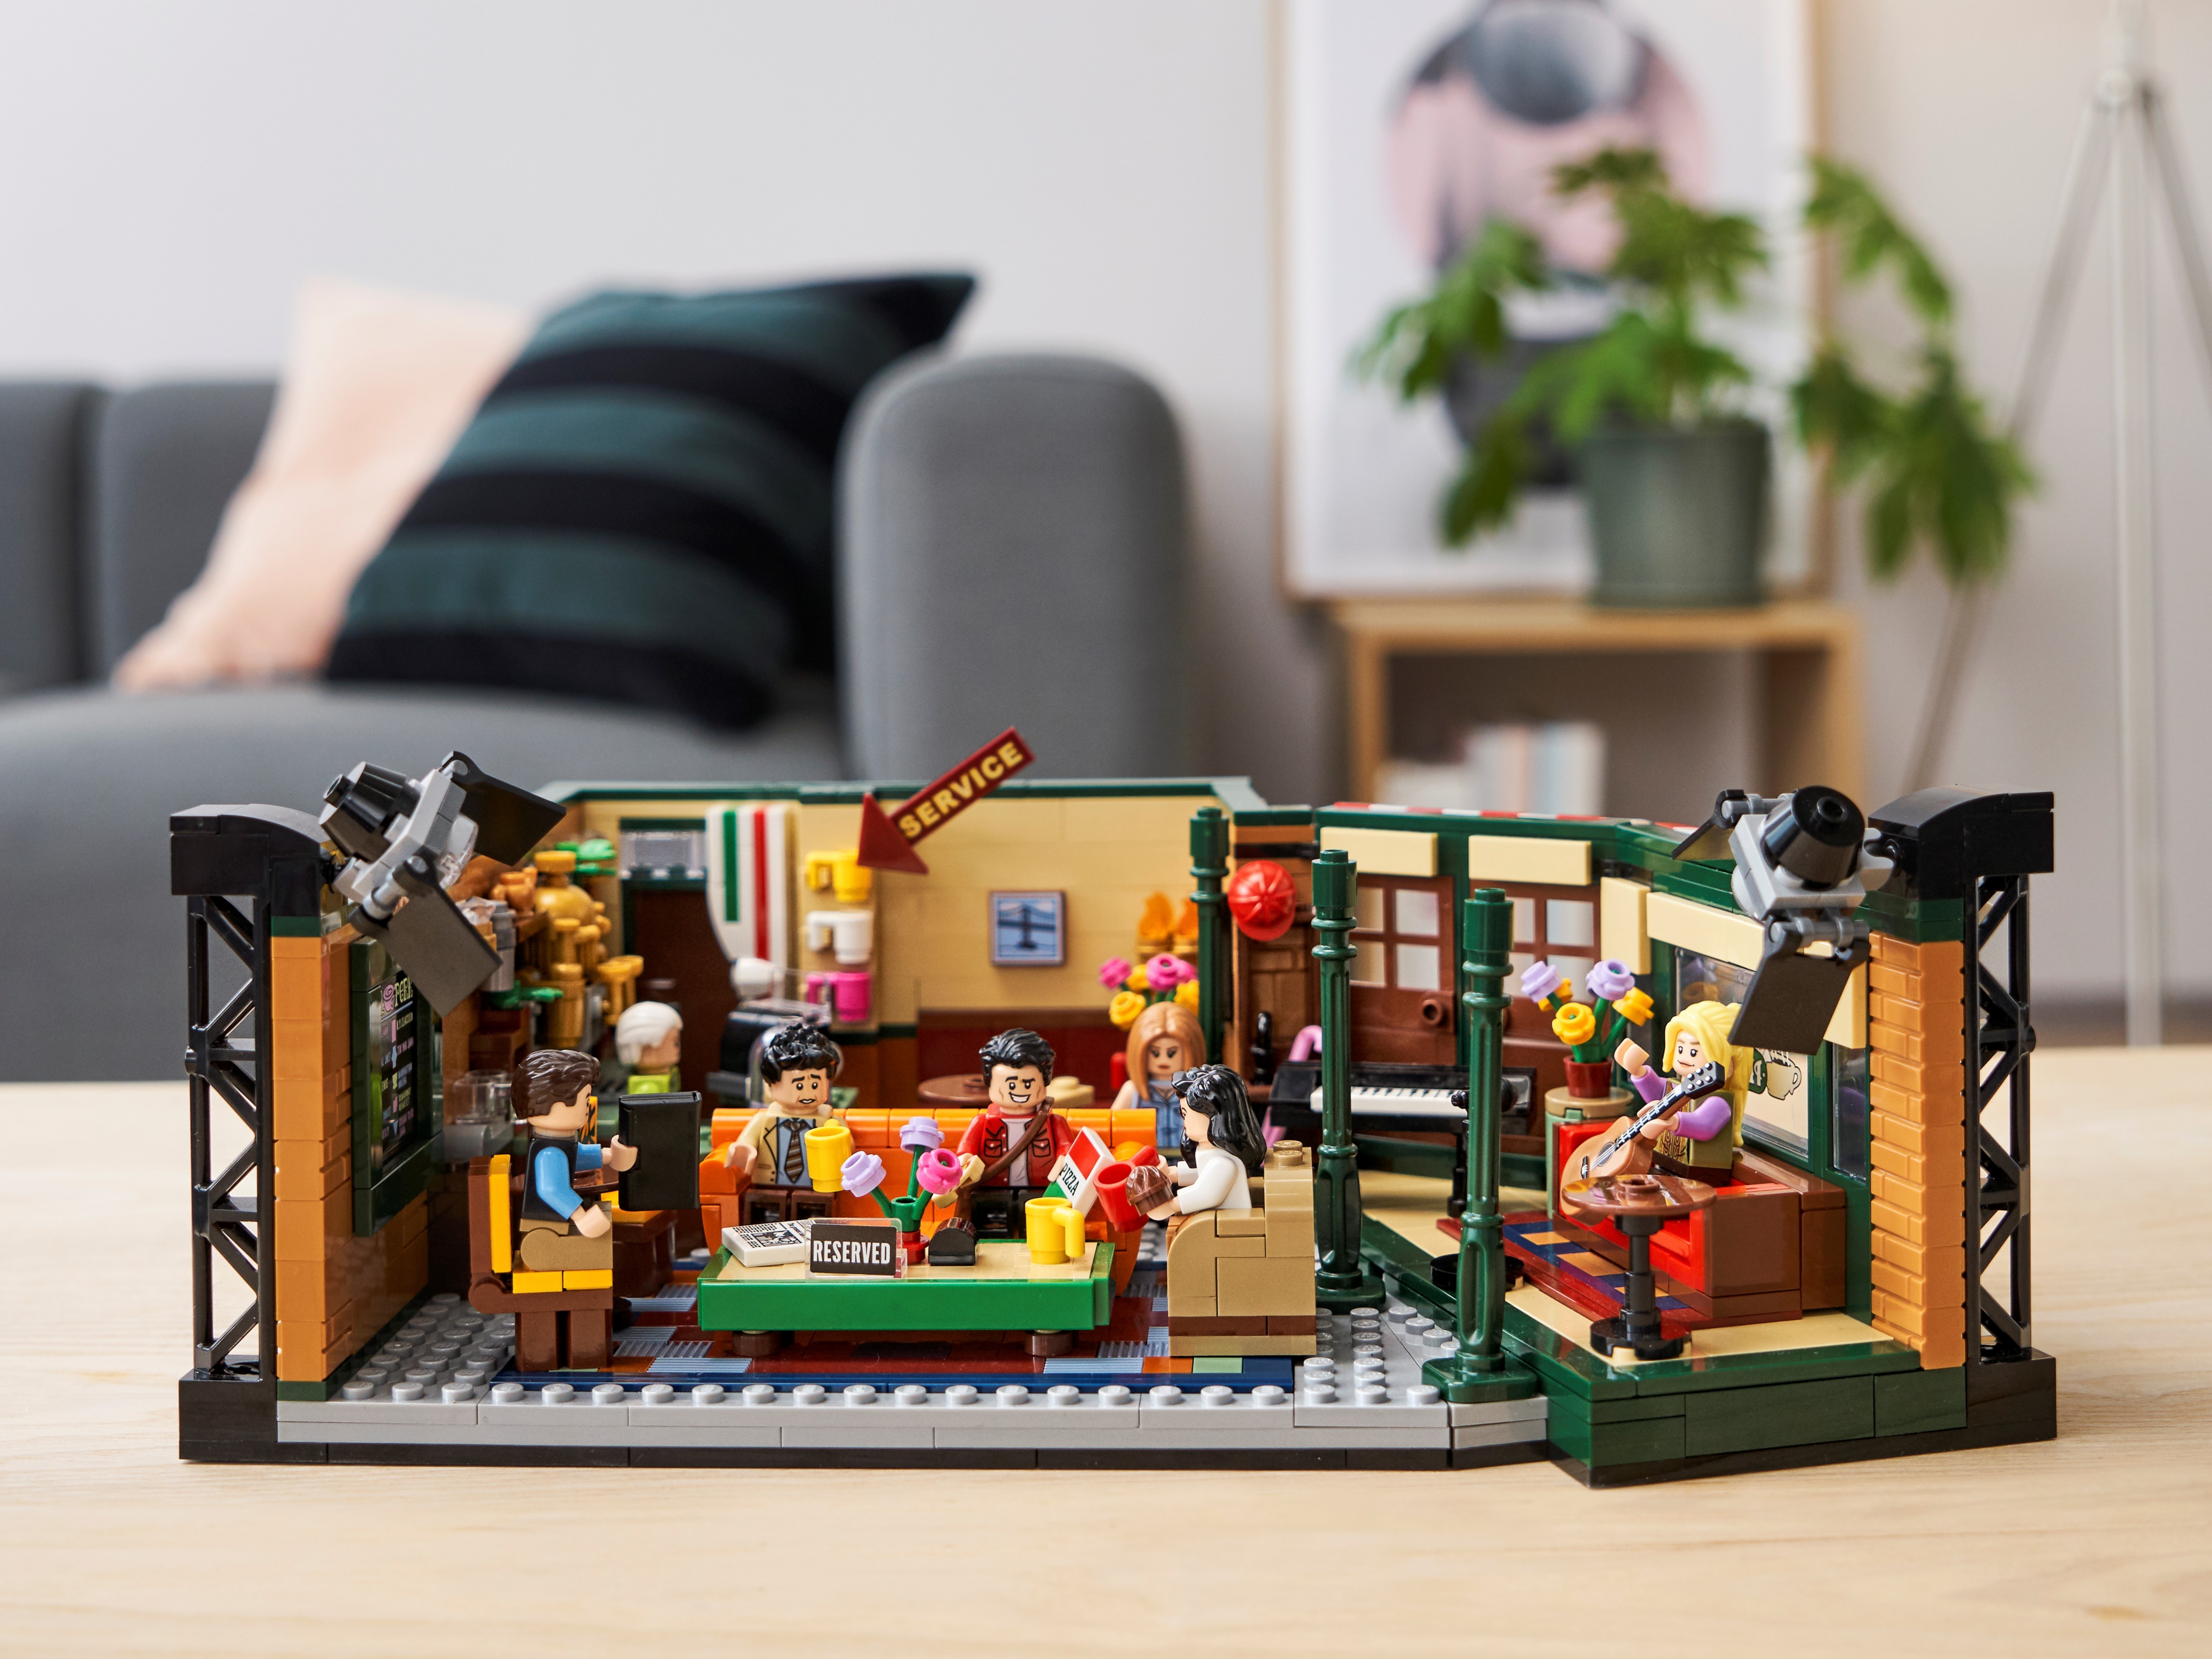 LEGO® 21319 Friends™ Central Perk Building Set, 1070 pc - City Market